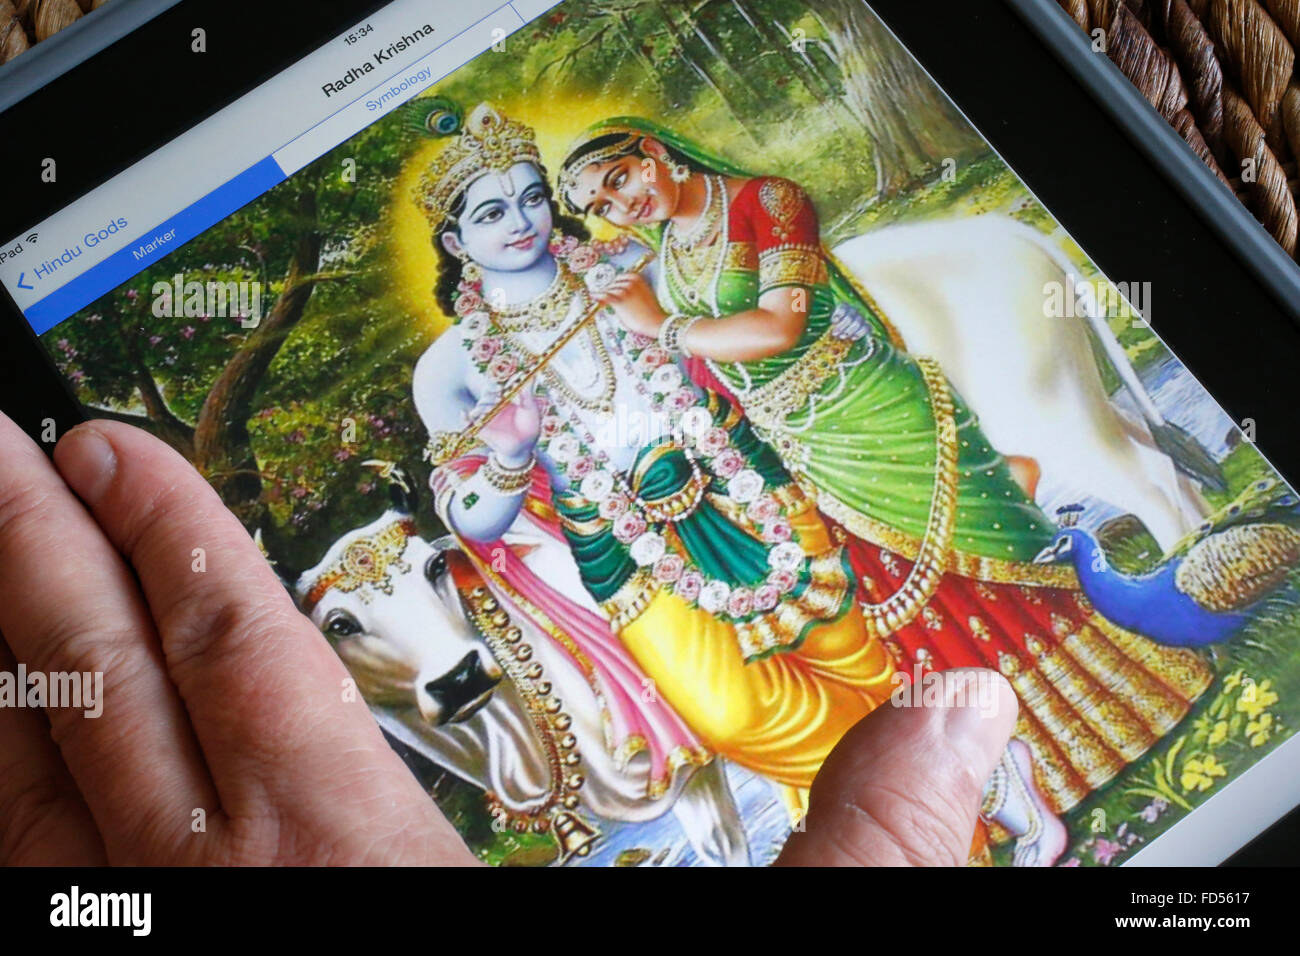 Hindu deities on an Ipad. Radha and Krishna. Stock Photo